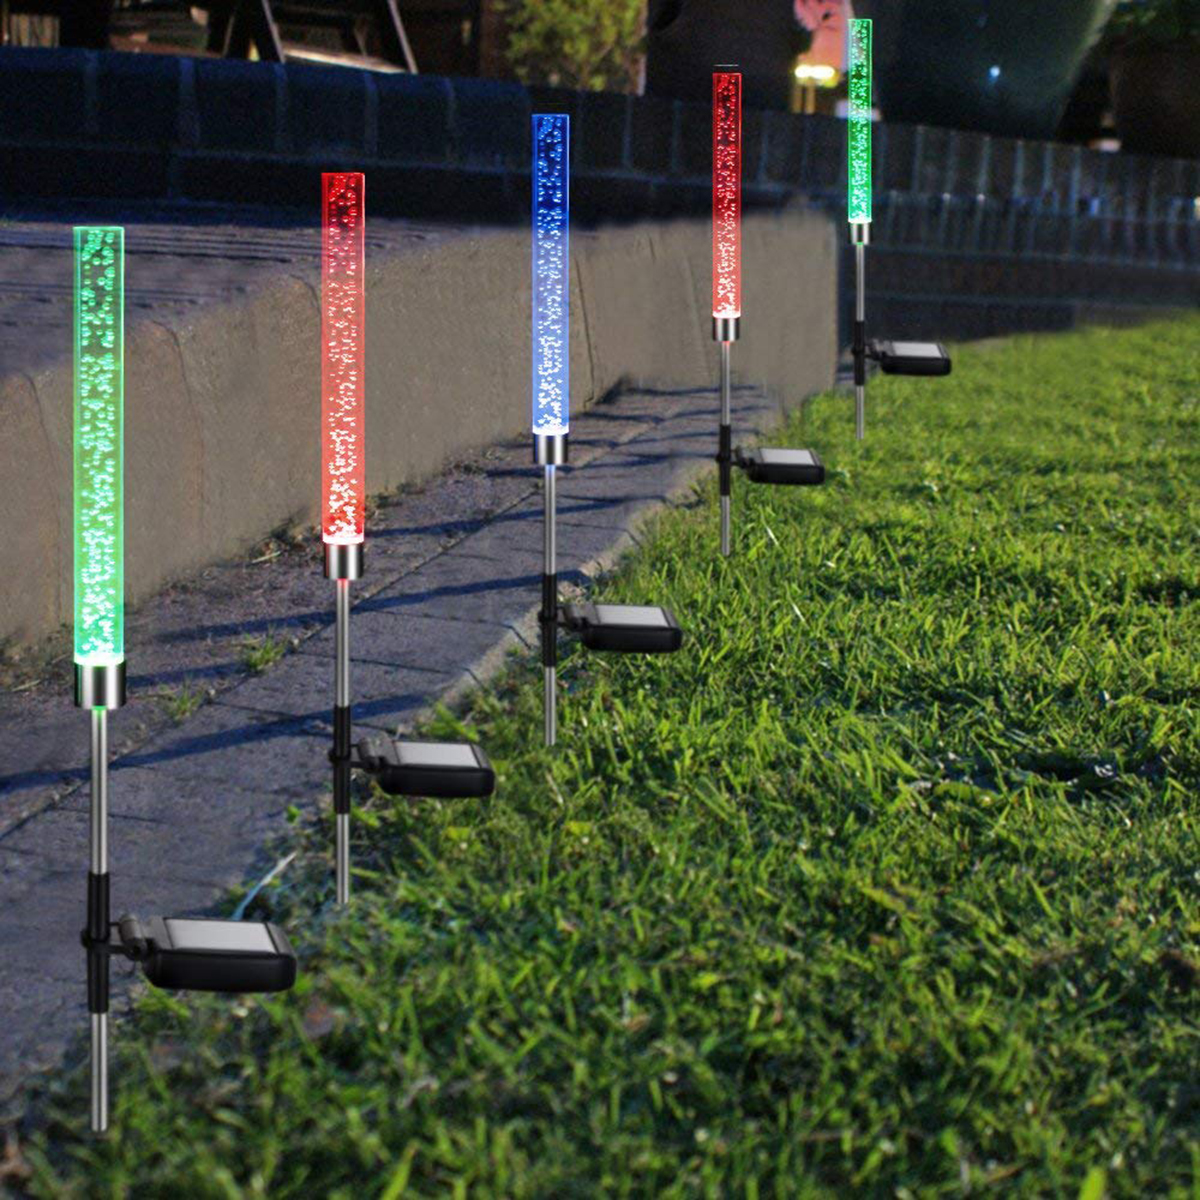 2Pcs-Bubble-LED-Stick-Light-Solar-Powered-Garden-Lawn-Landscape-Path-Lamp-Decorations-1346263-1